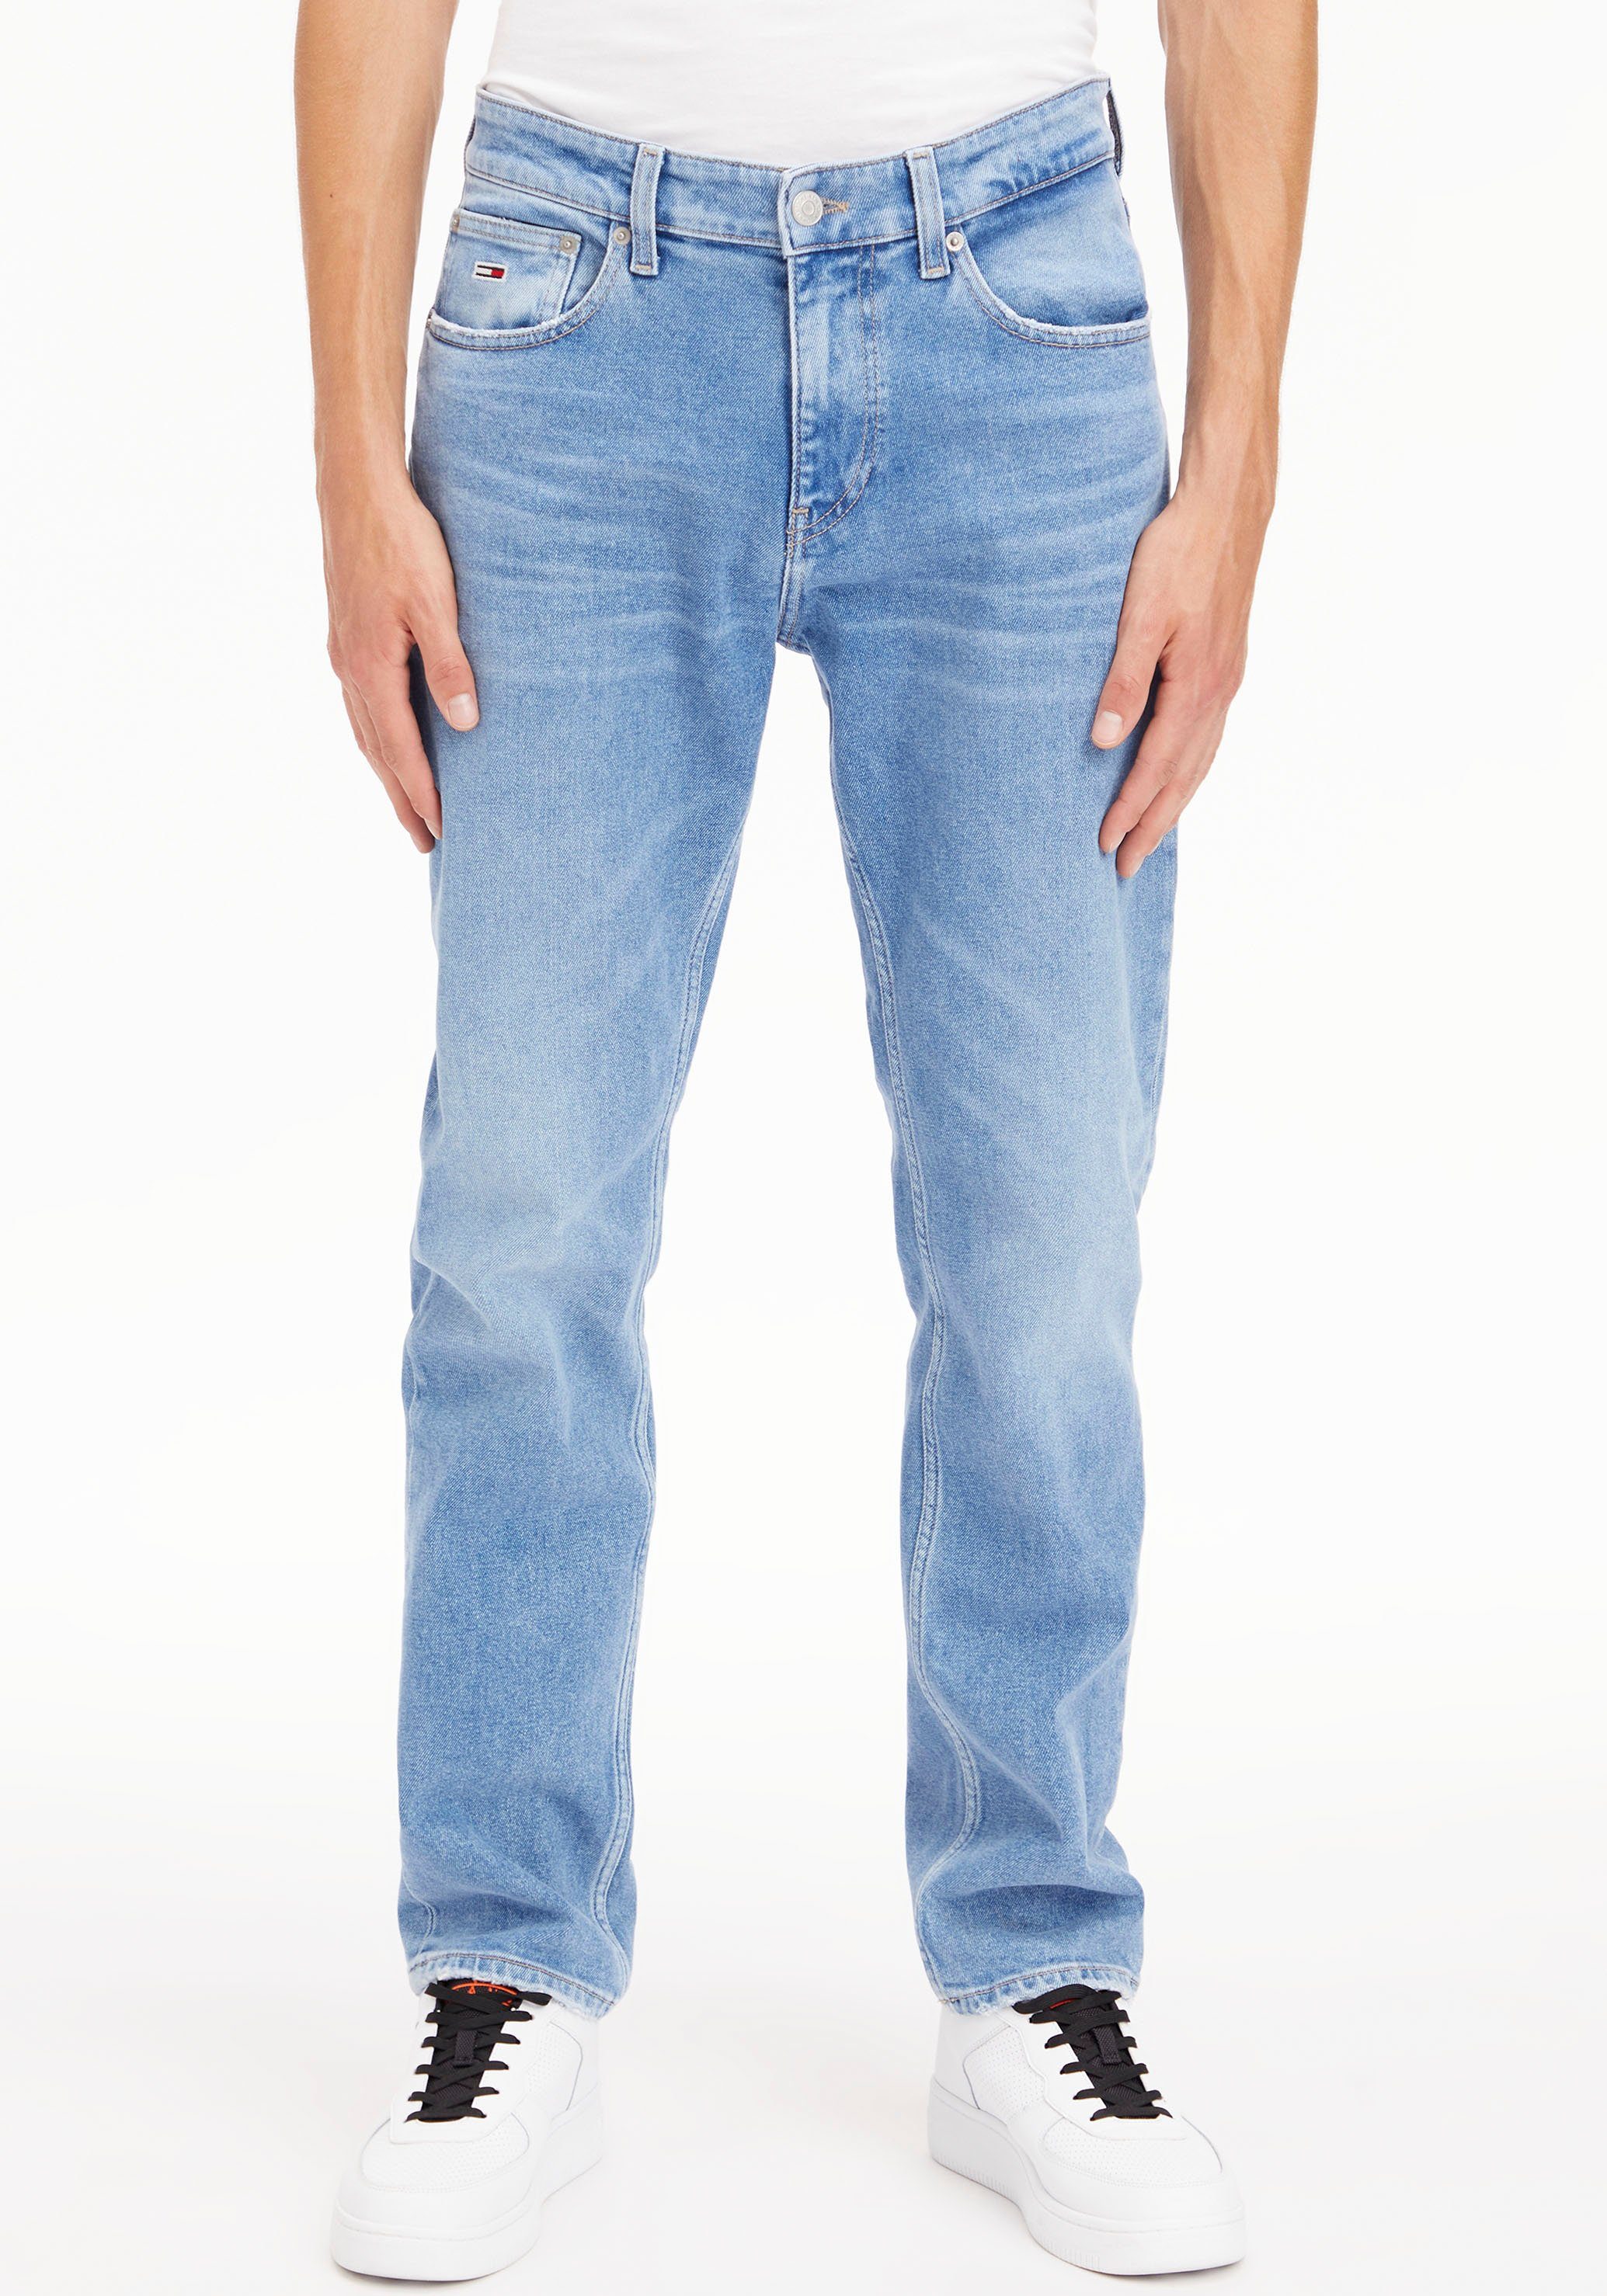 Jeansshorts SHORT PANT Destroyed- HOT BG0036 Tommy Abriebeffekten und Jeans mit